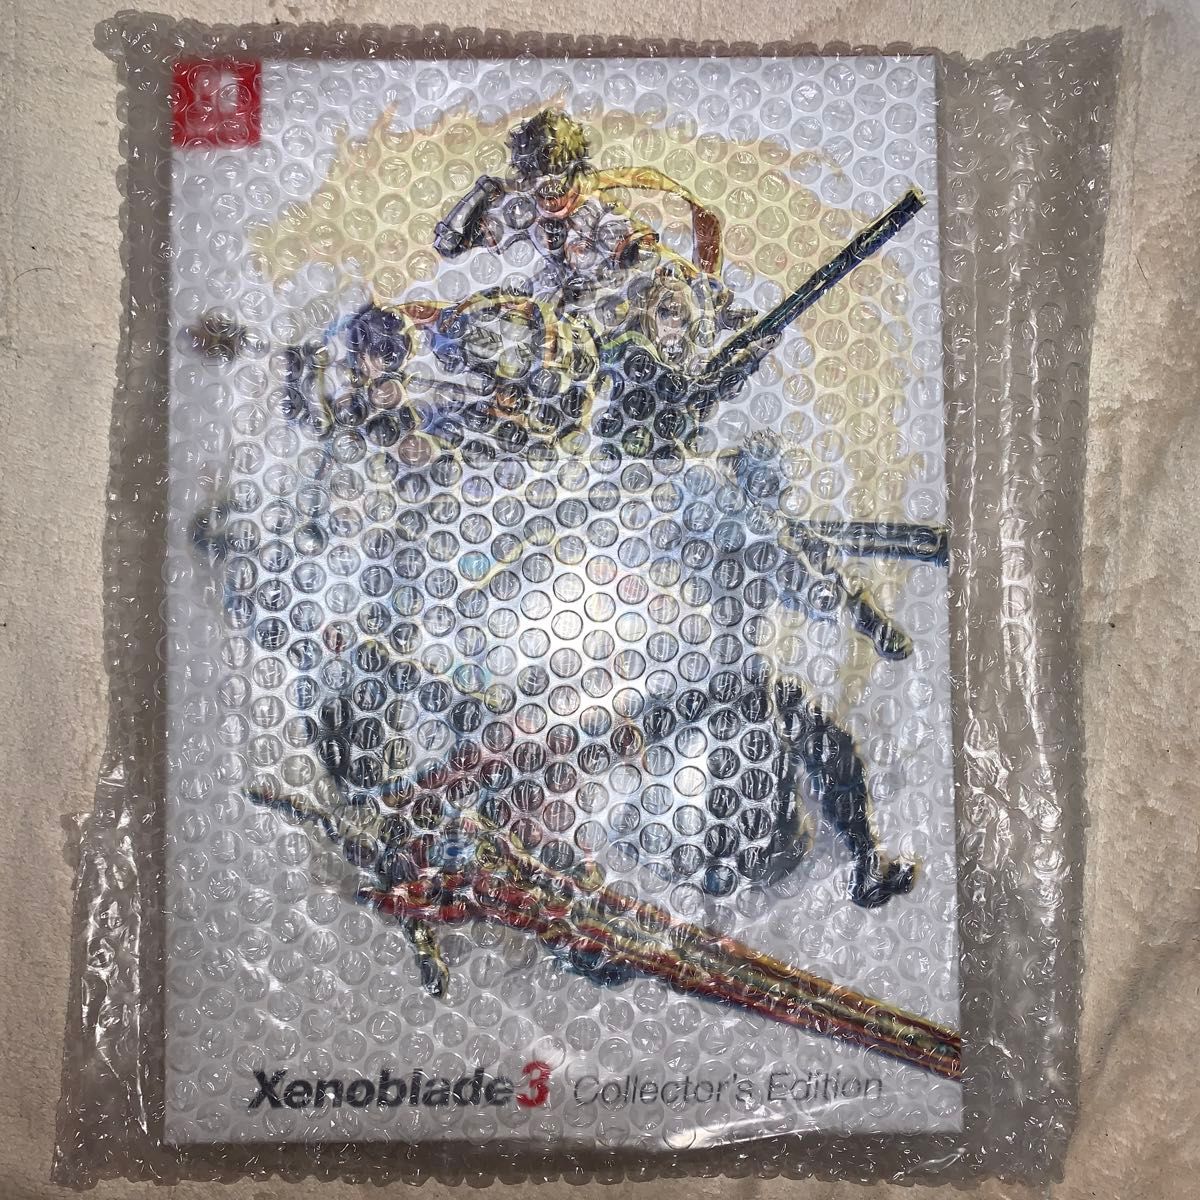 ゼノブレイド3 コレクターズエディション(特典のみ)Xenoblade3 Collector's Edition